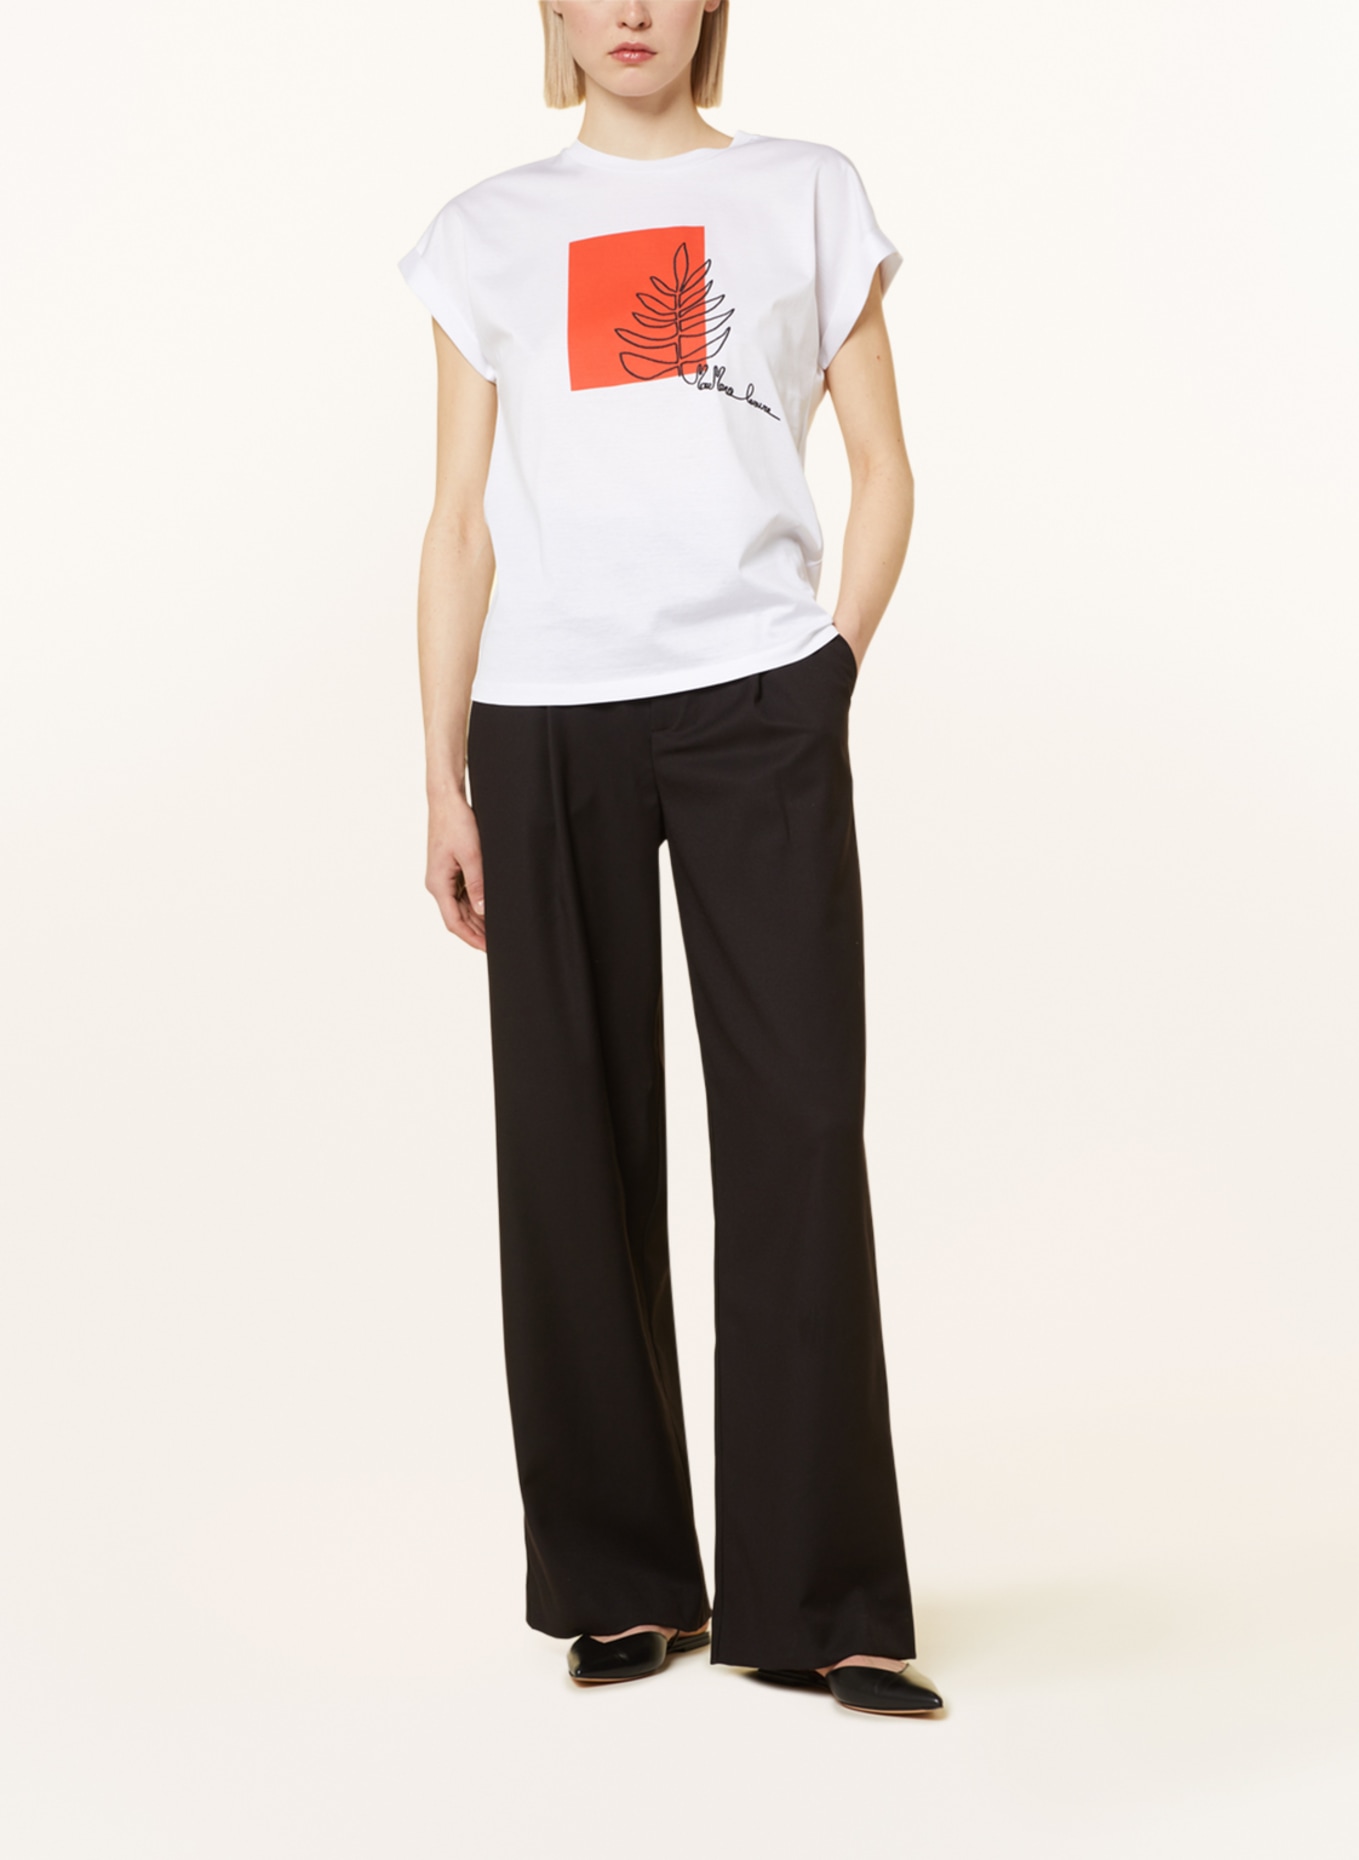 MaxMara LEISURE T-shirt BOLIVAR, Color: WHITE (Image 2)